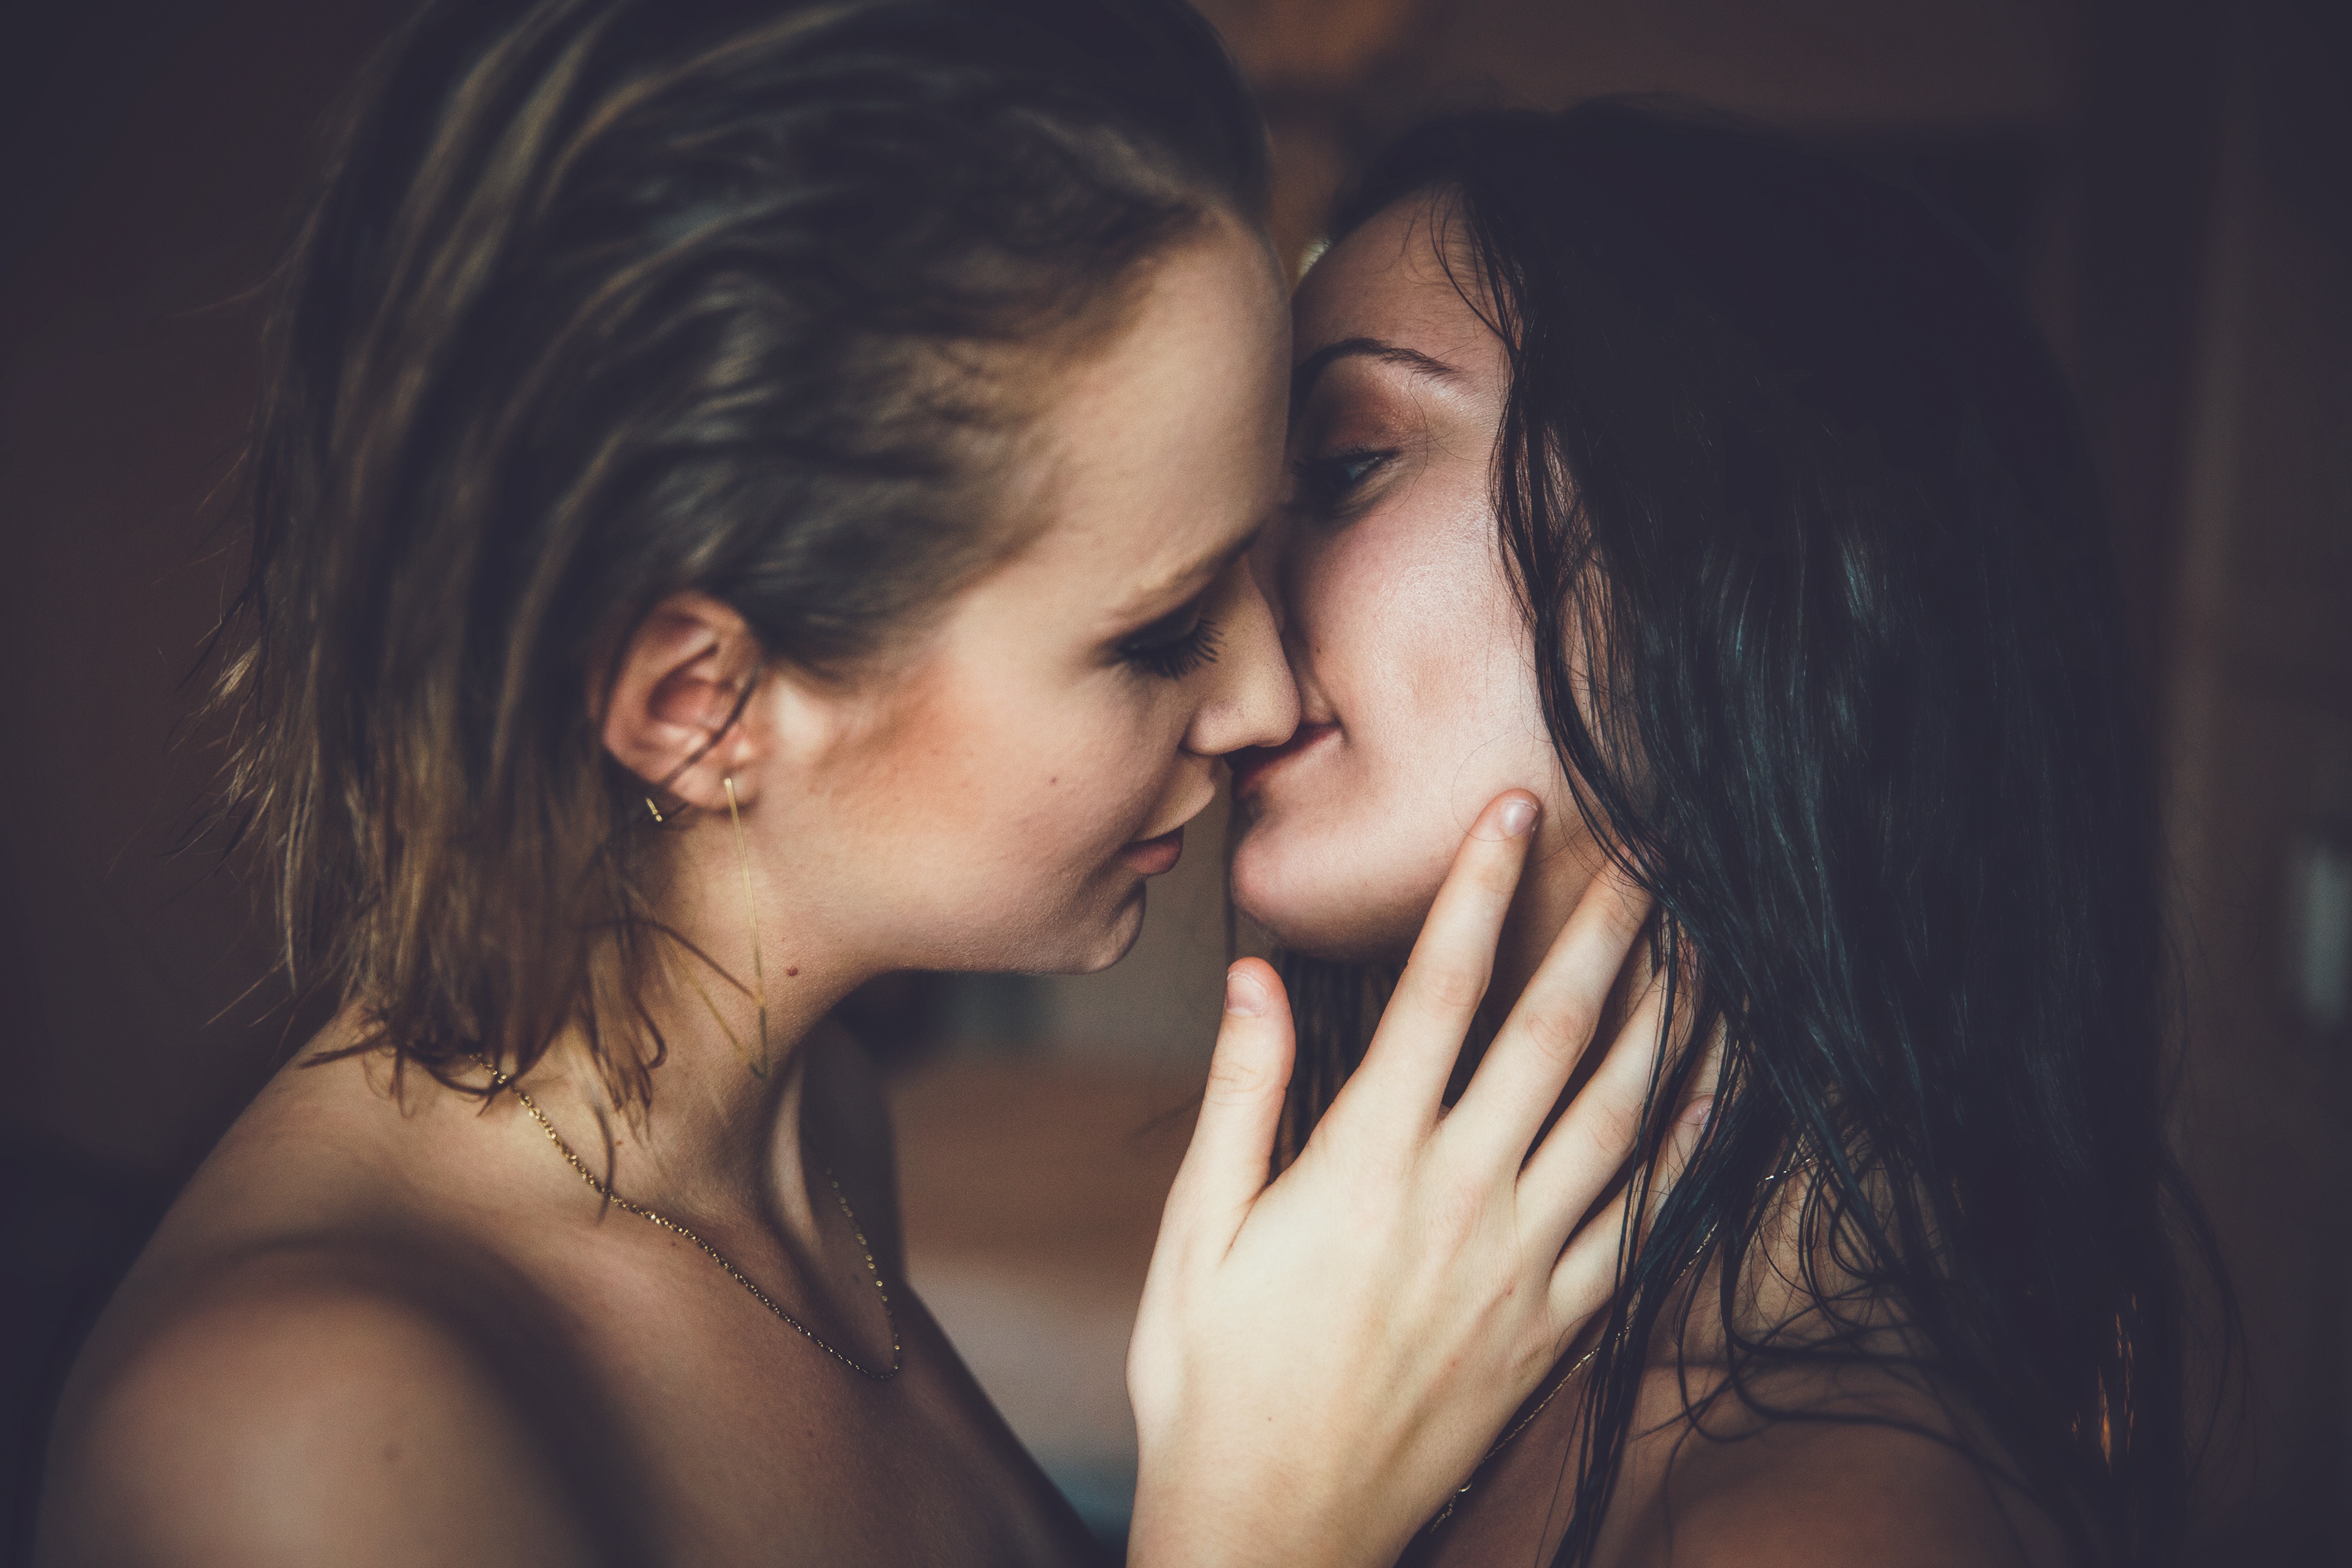 Lesbians домашняя. Барбара Палвин лесбийский поцелуй. Две девушки любовь. Поцелуй девушек. Фотосессия двух девушек.